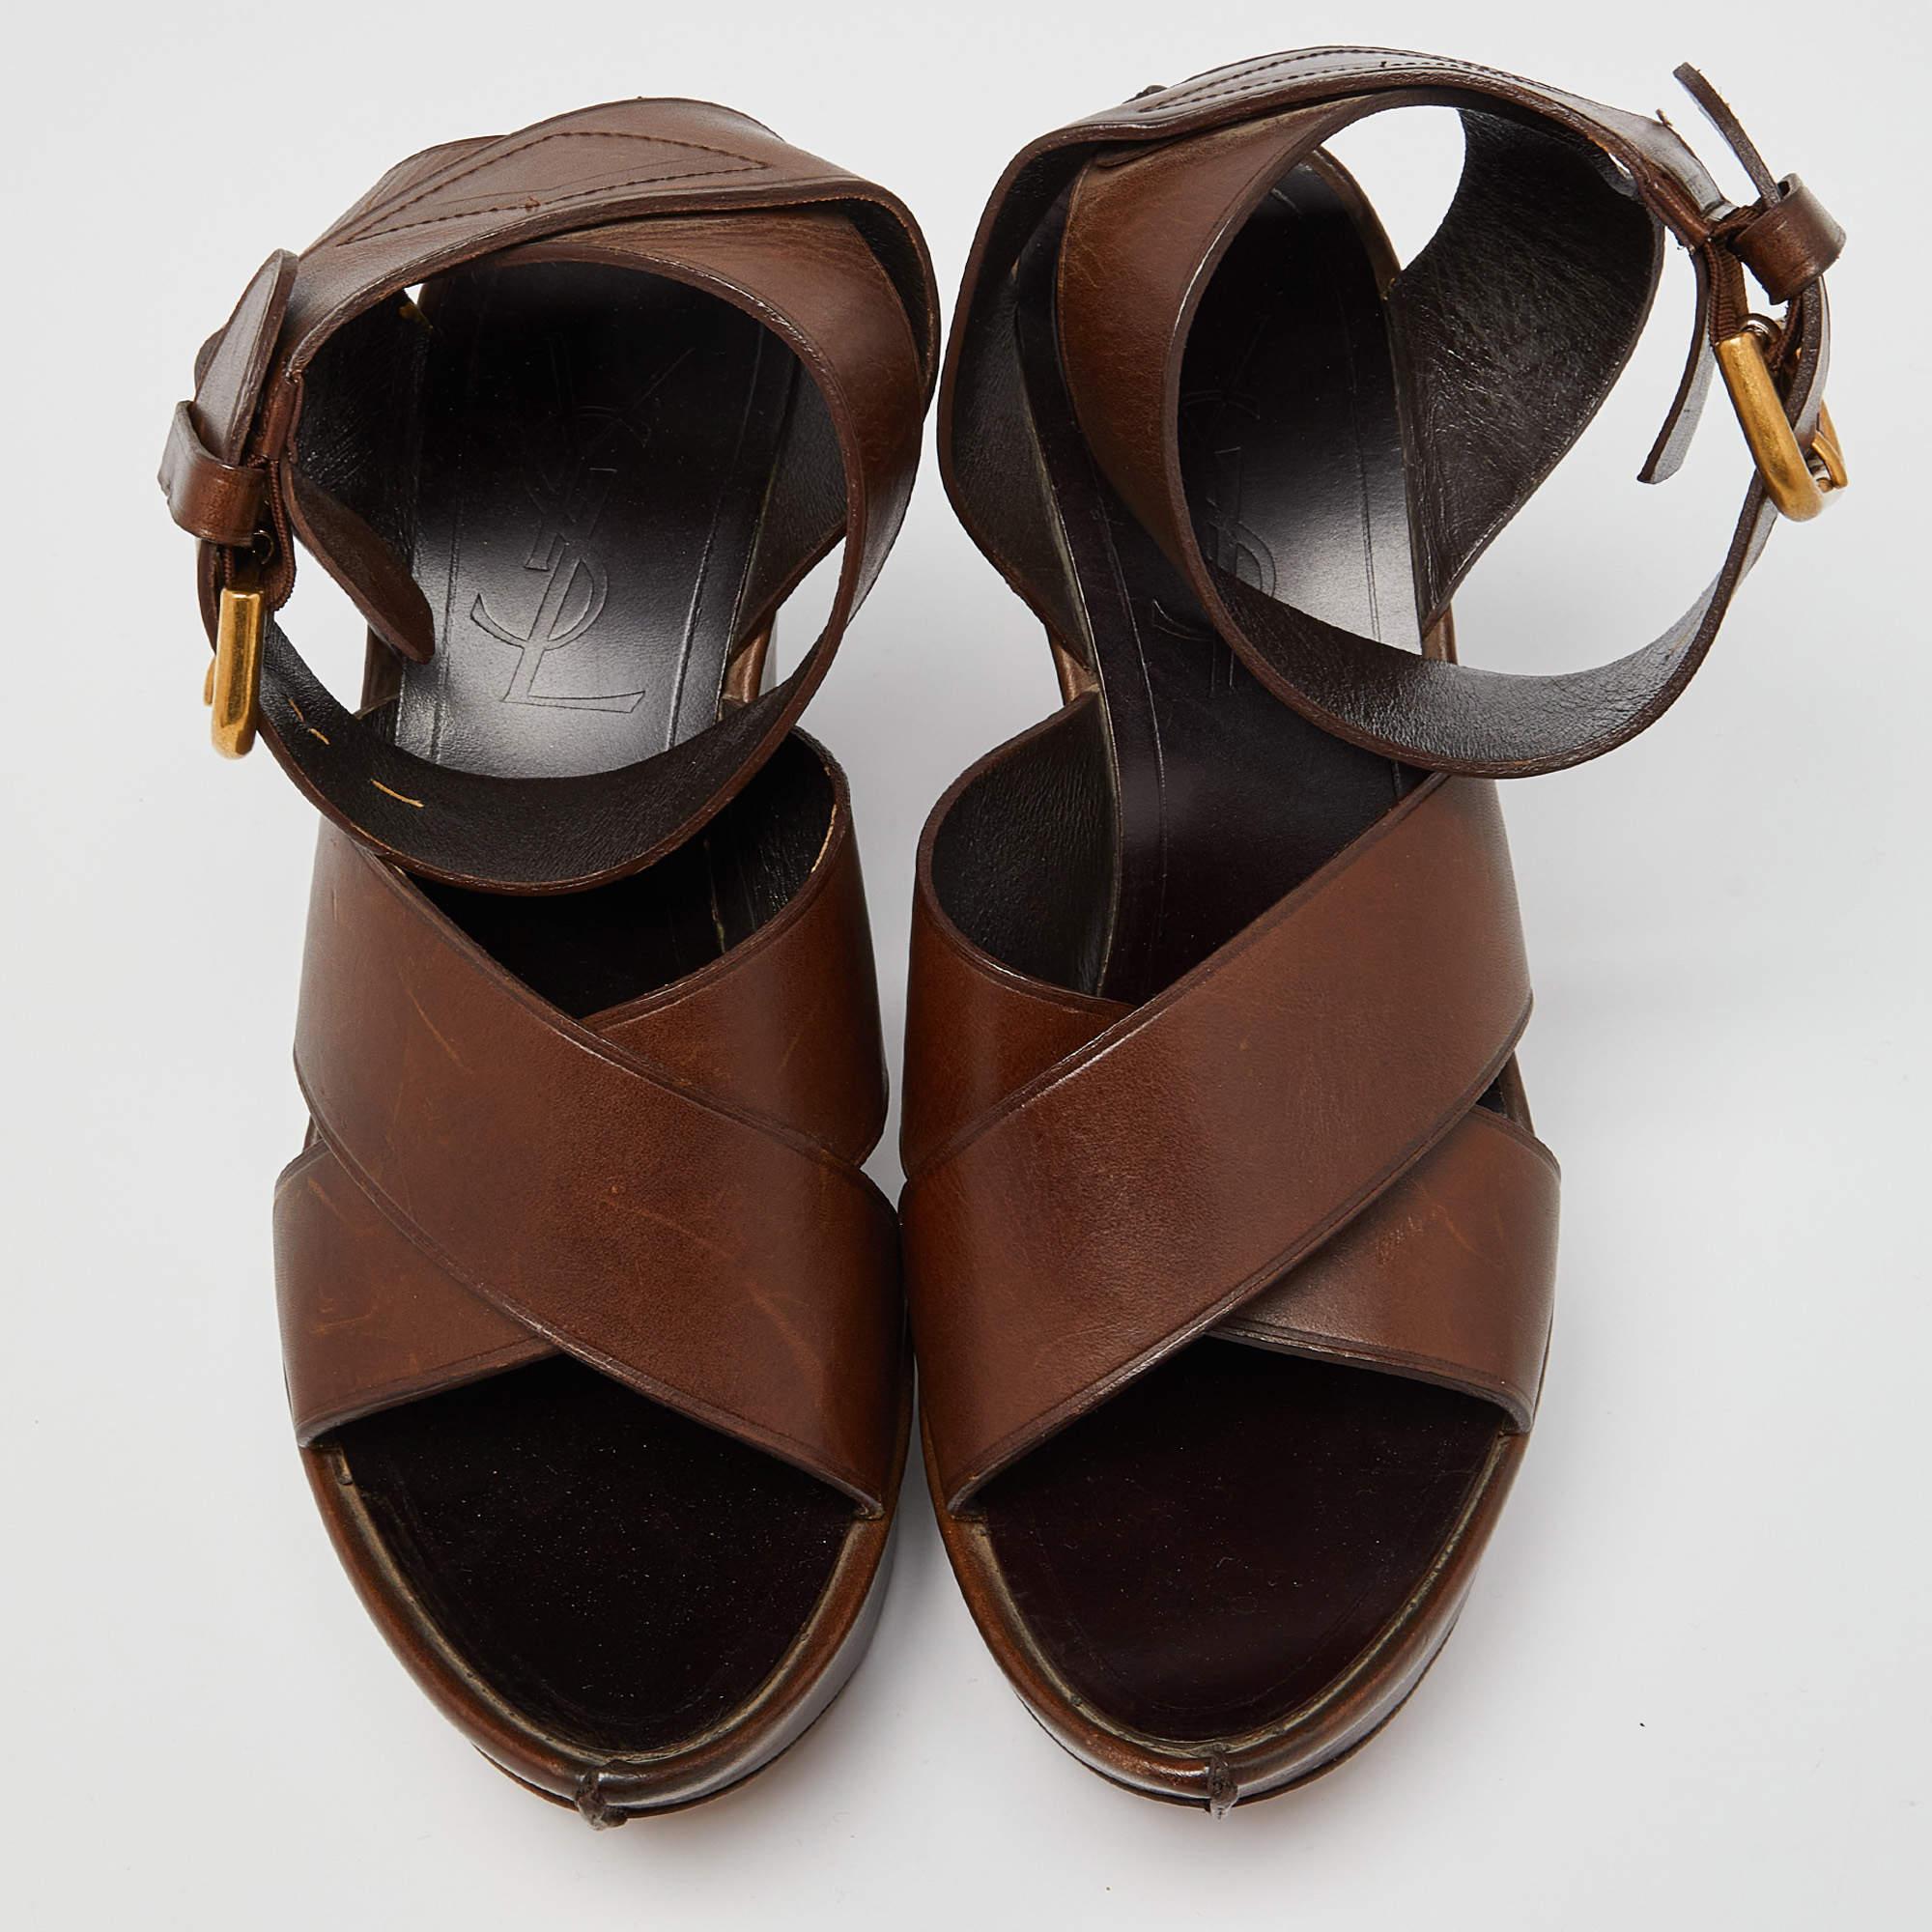 Ces sandales vous offriront à la fois luxe et confort. Fabriquées à partir de matériaux de qualité, elles sont proposées dans une teinte polyvalente et sont équipées de semelles intérieures confortables.

